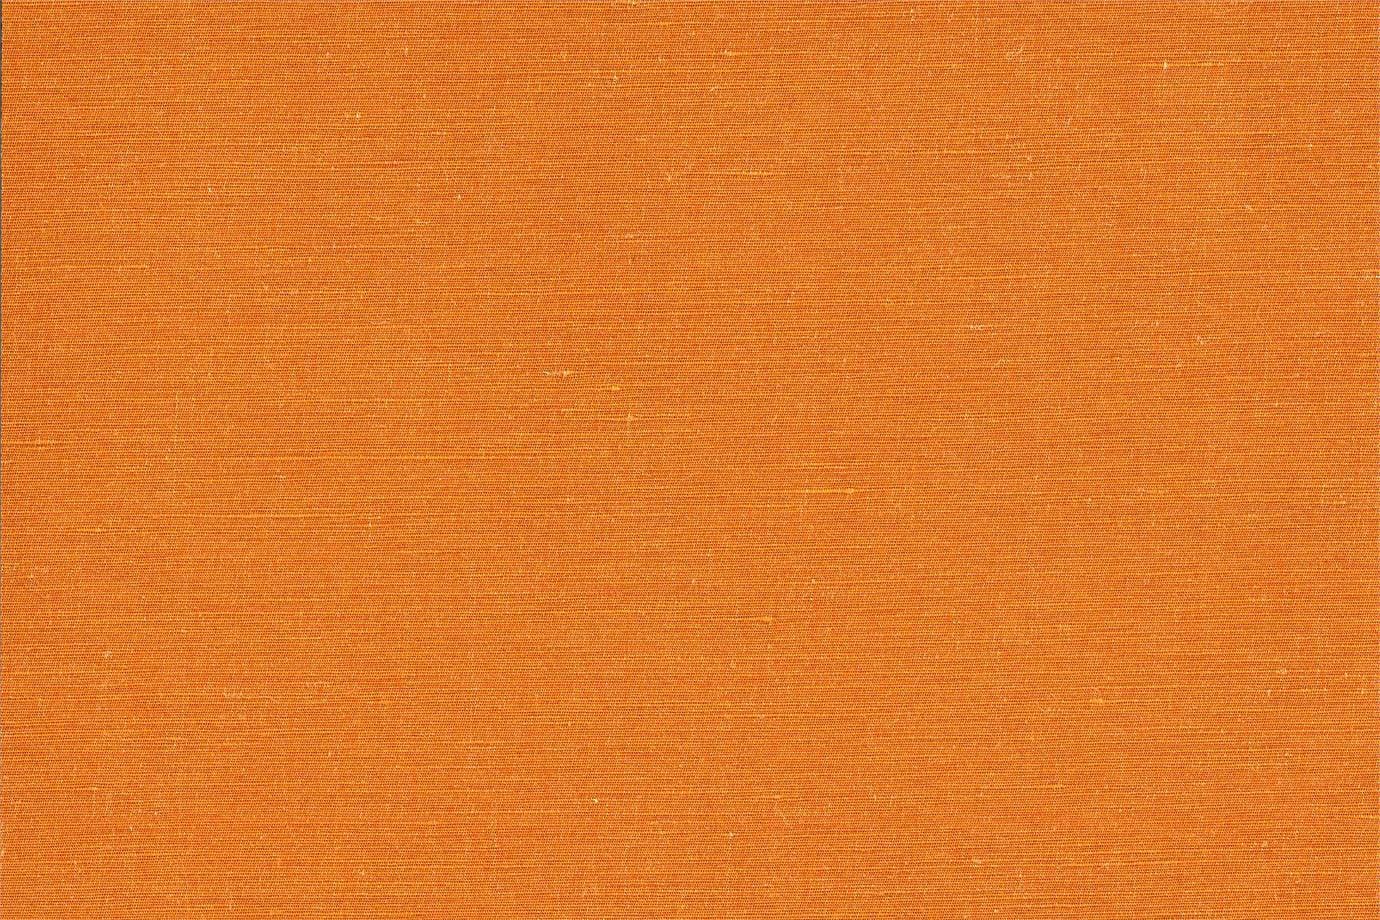 J1951 SECONDIGLIANO 015 Arancio home decoration fabric